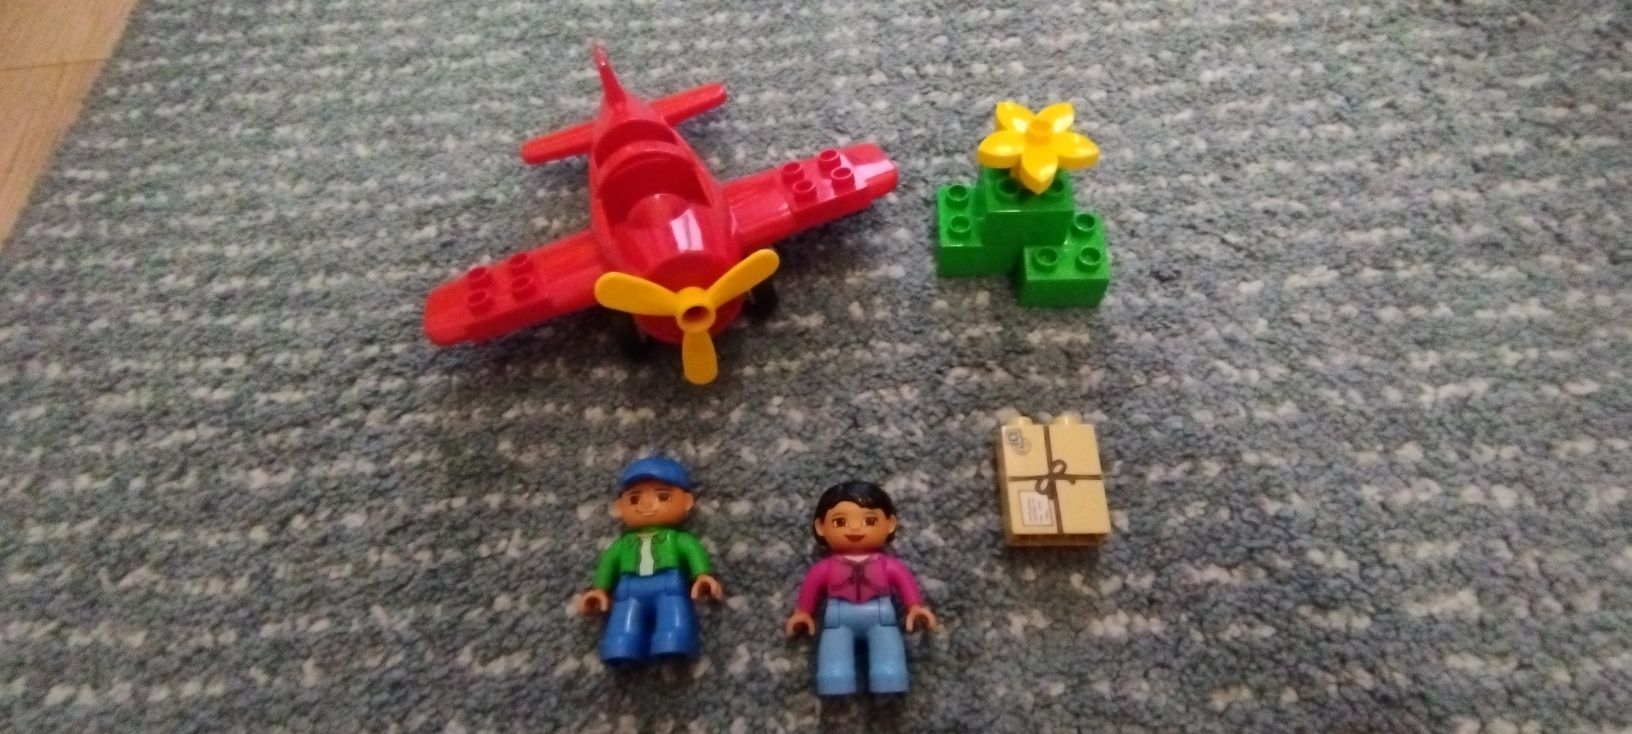 Samolot LEGO Duplo 5592